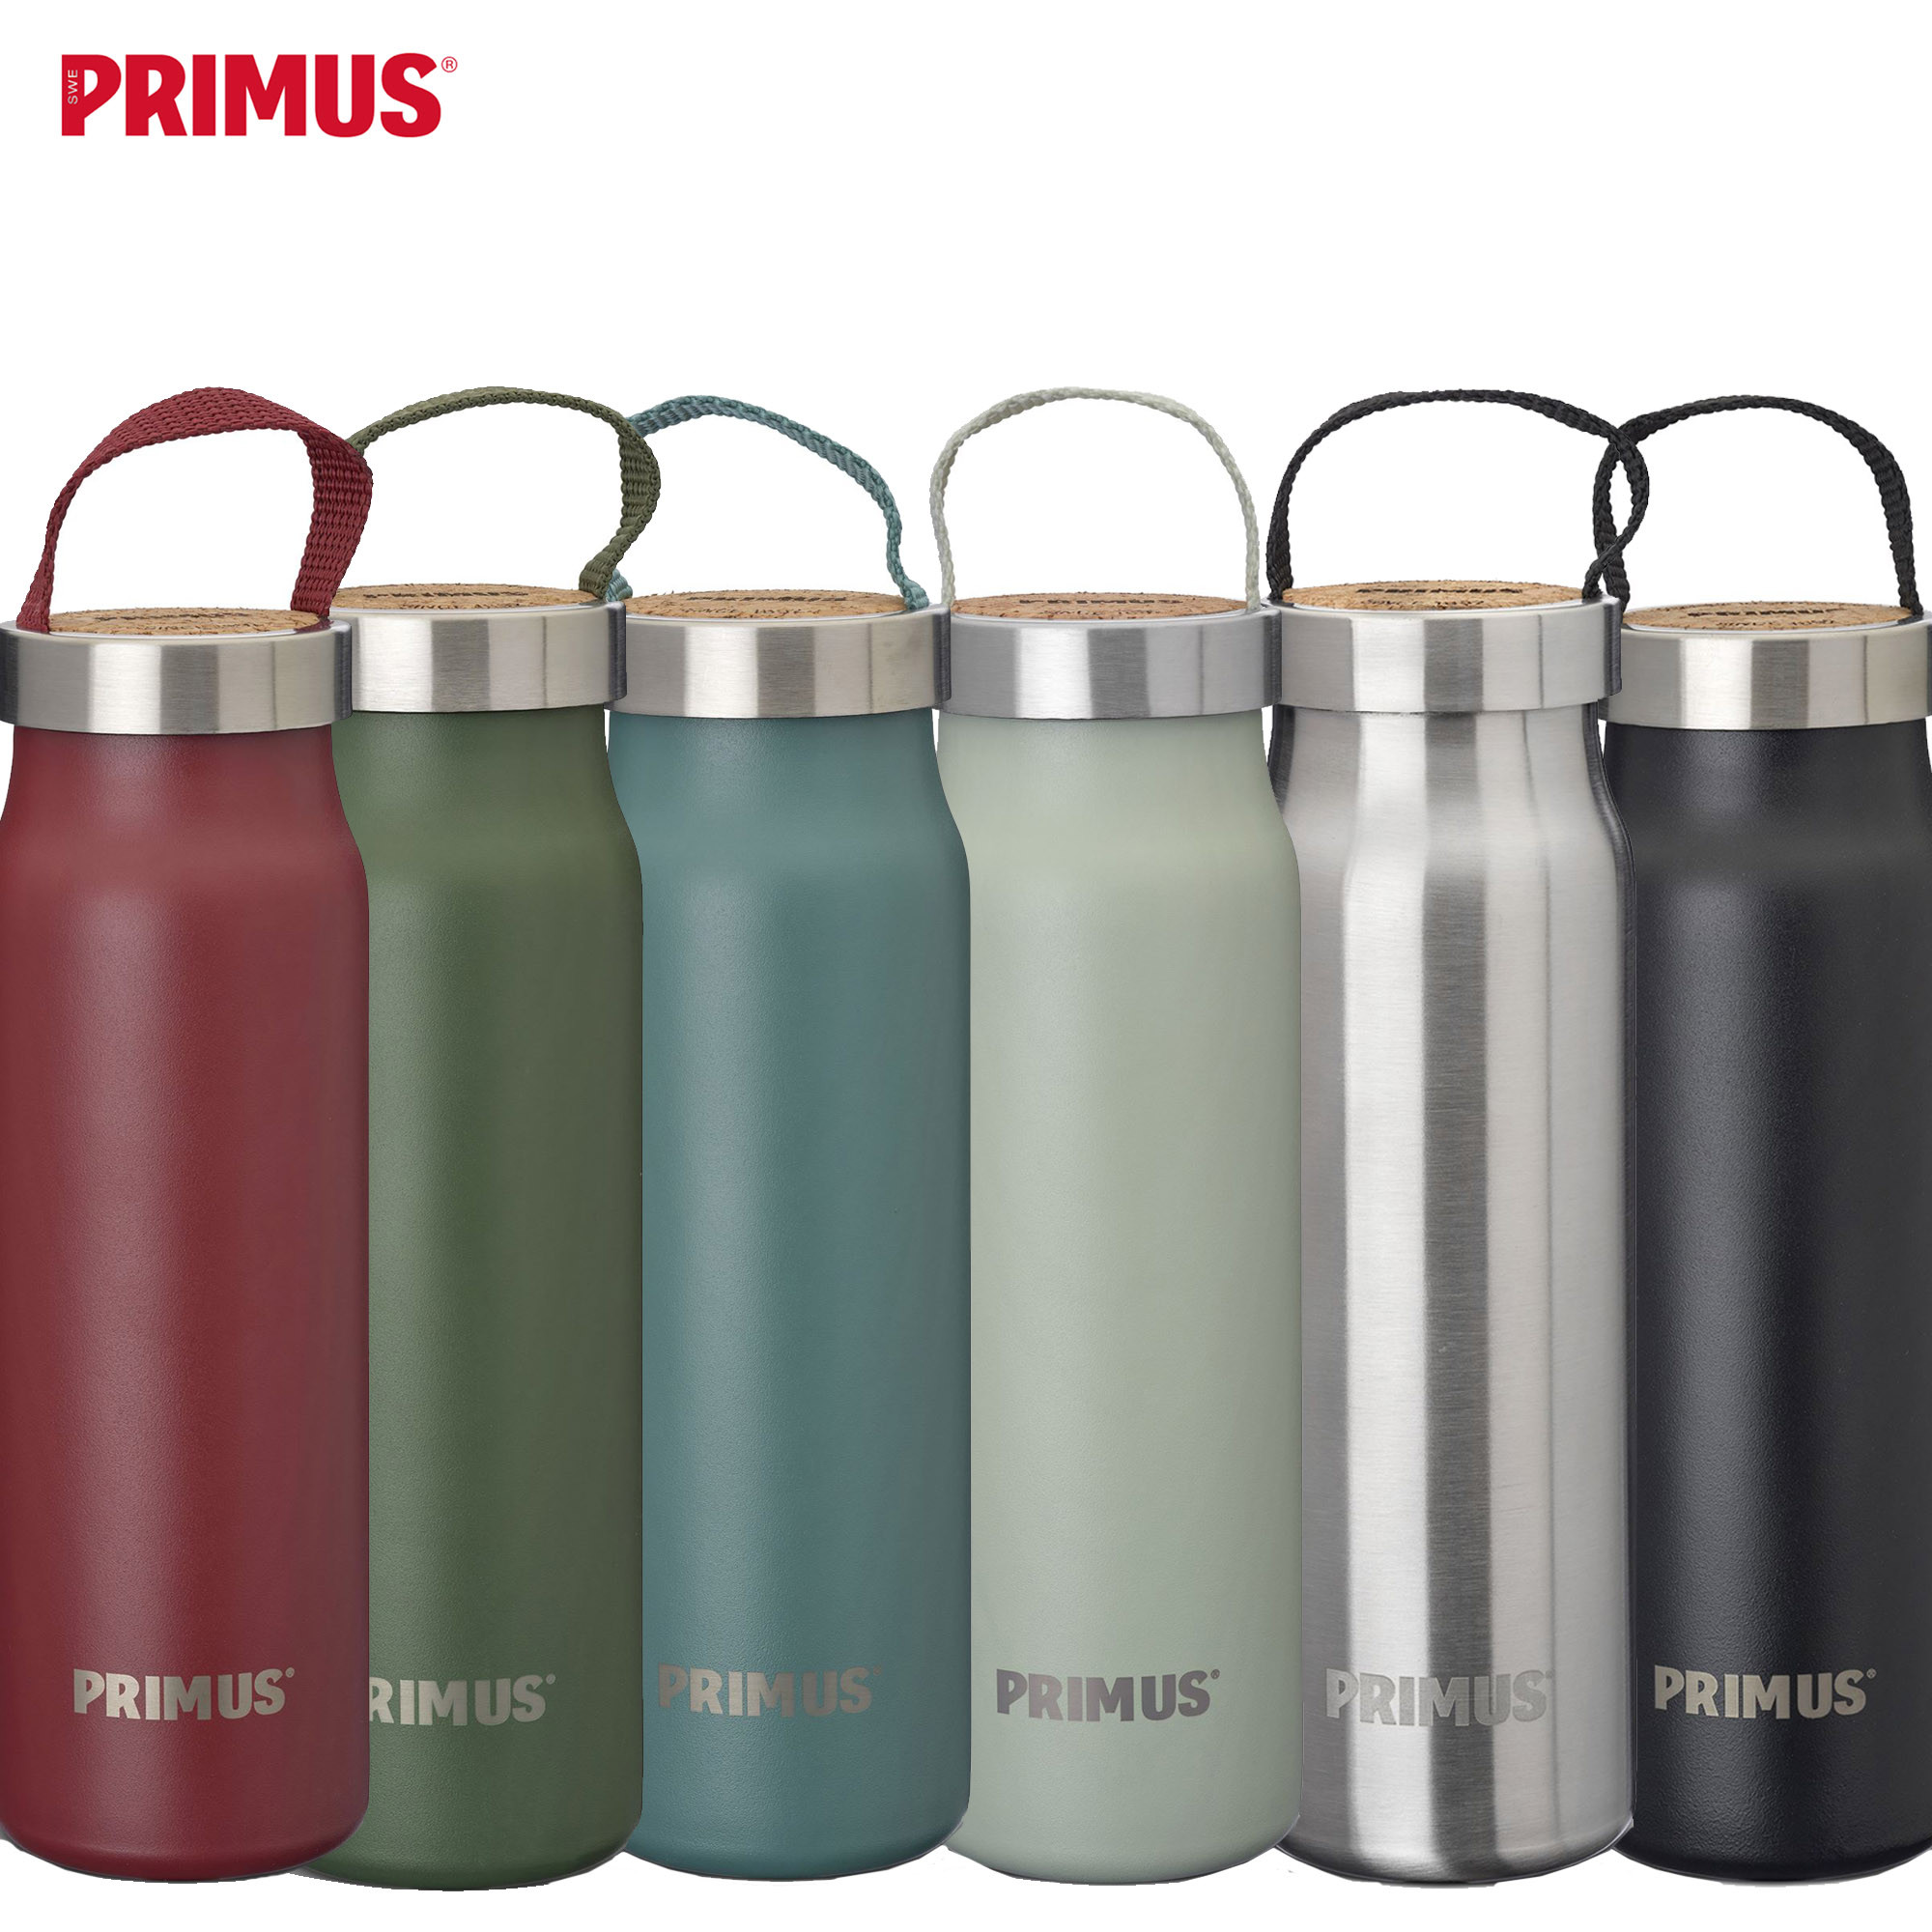 Primus Klunken Vacuum Bottle 0.5 L